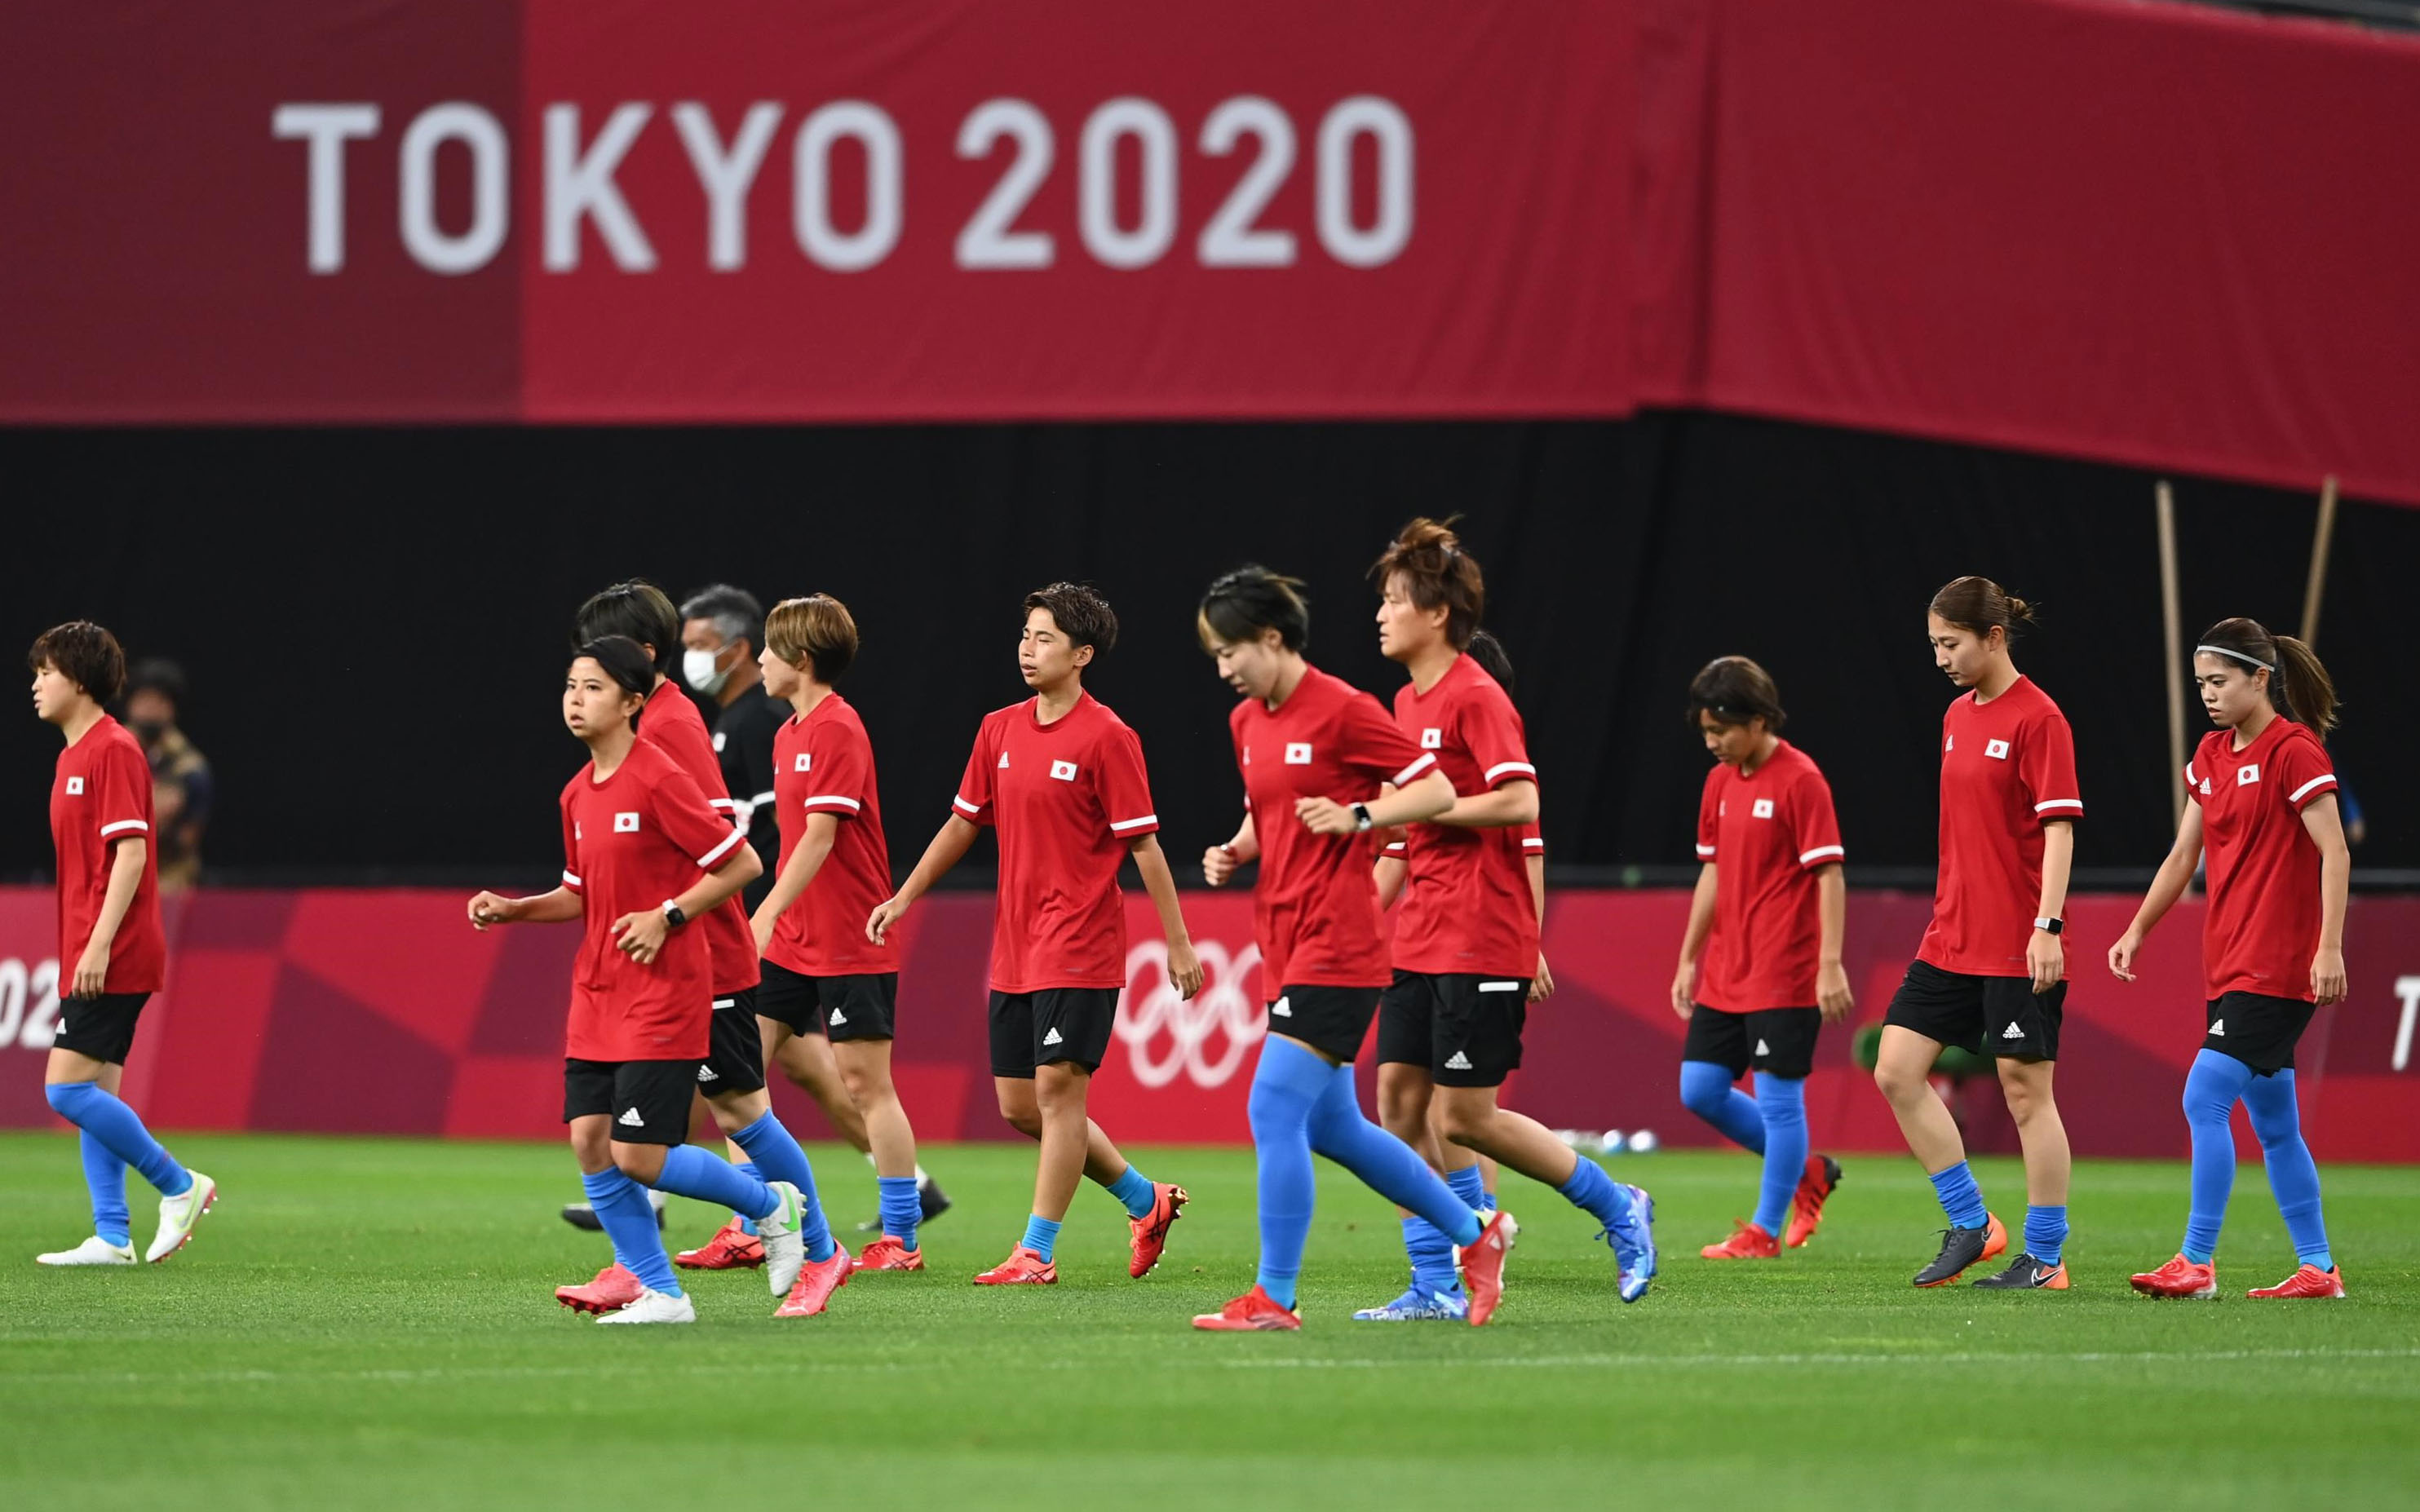 日経 写真映像 東京オリンピック 札幌ドームではサッカー女子日本代表 なでしこジャパン のメンバーがピッチに登場しました 午後7時30分からカナダとの試合が無観客で始まります 東京五輪ビジュアルリポートはこちら T Co Ix0whuaawv